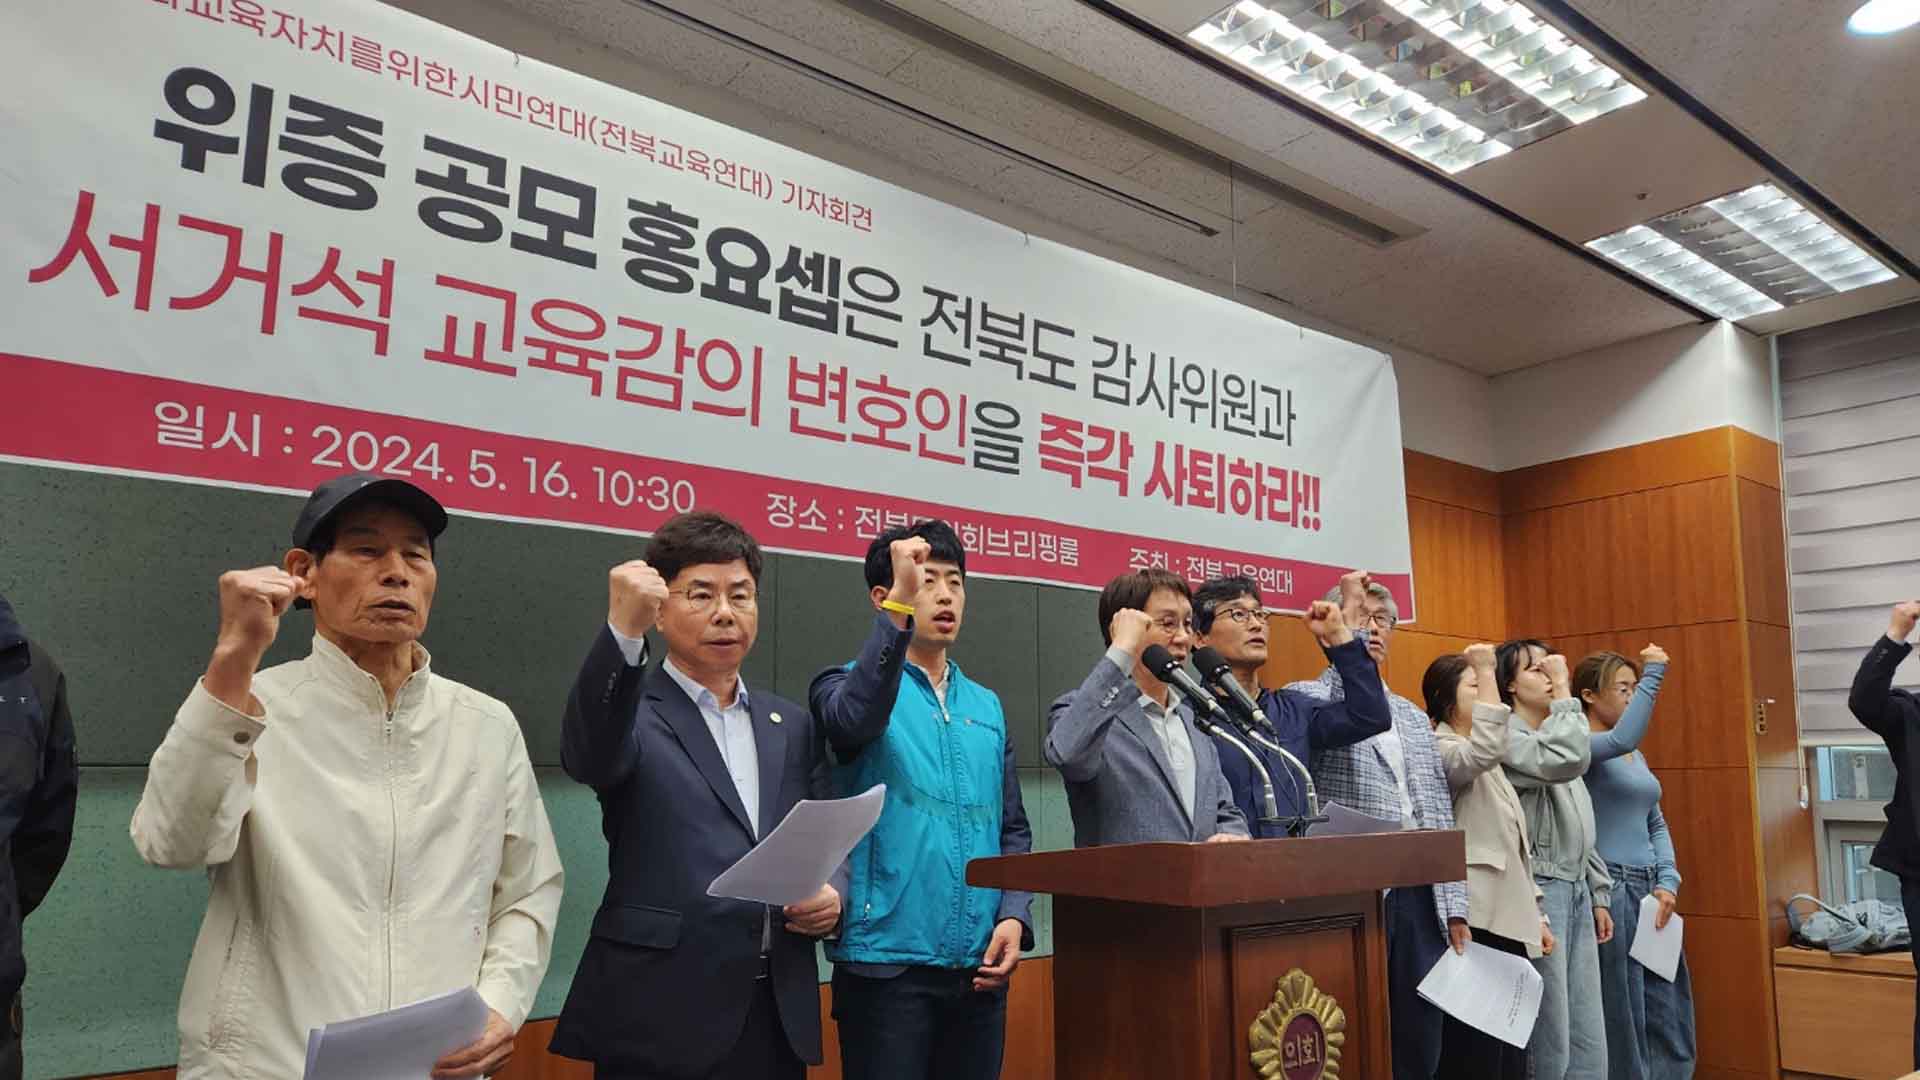 전북교육연대, 서거석 변호인 '홍요셉' 공직 사퇴 촉구..명예훼손 반박